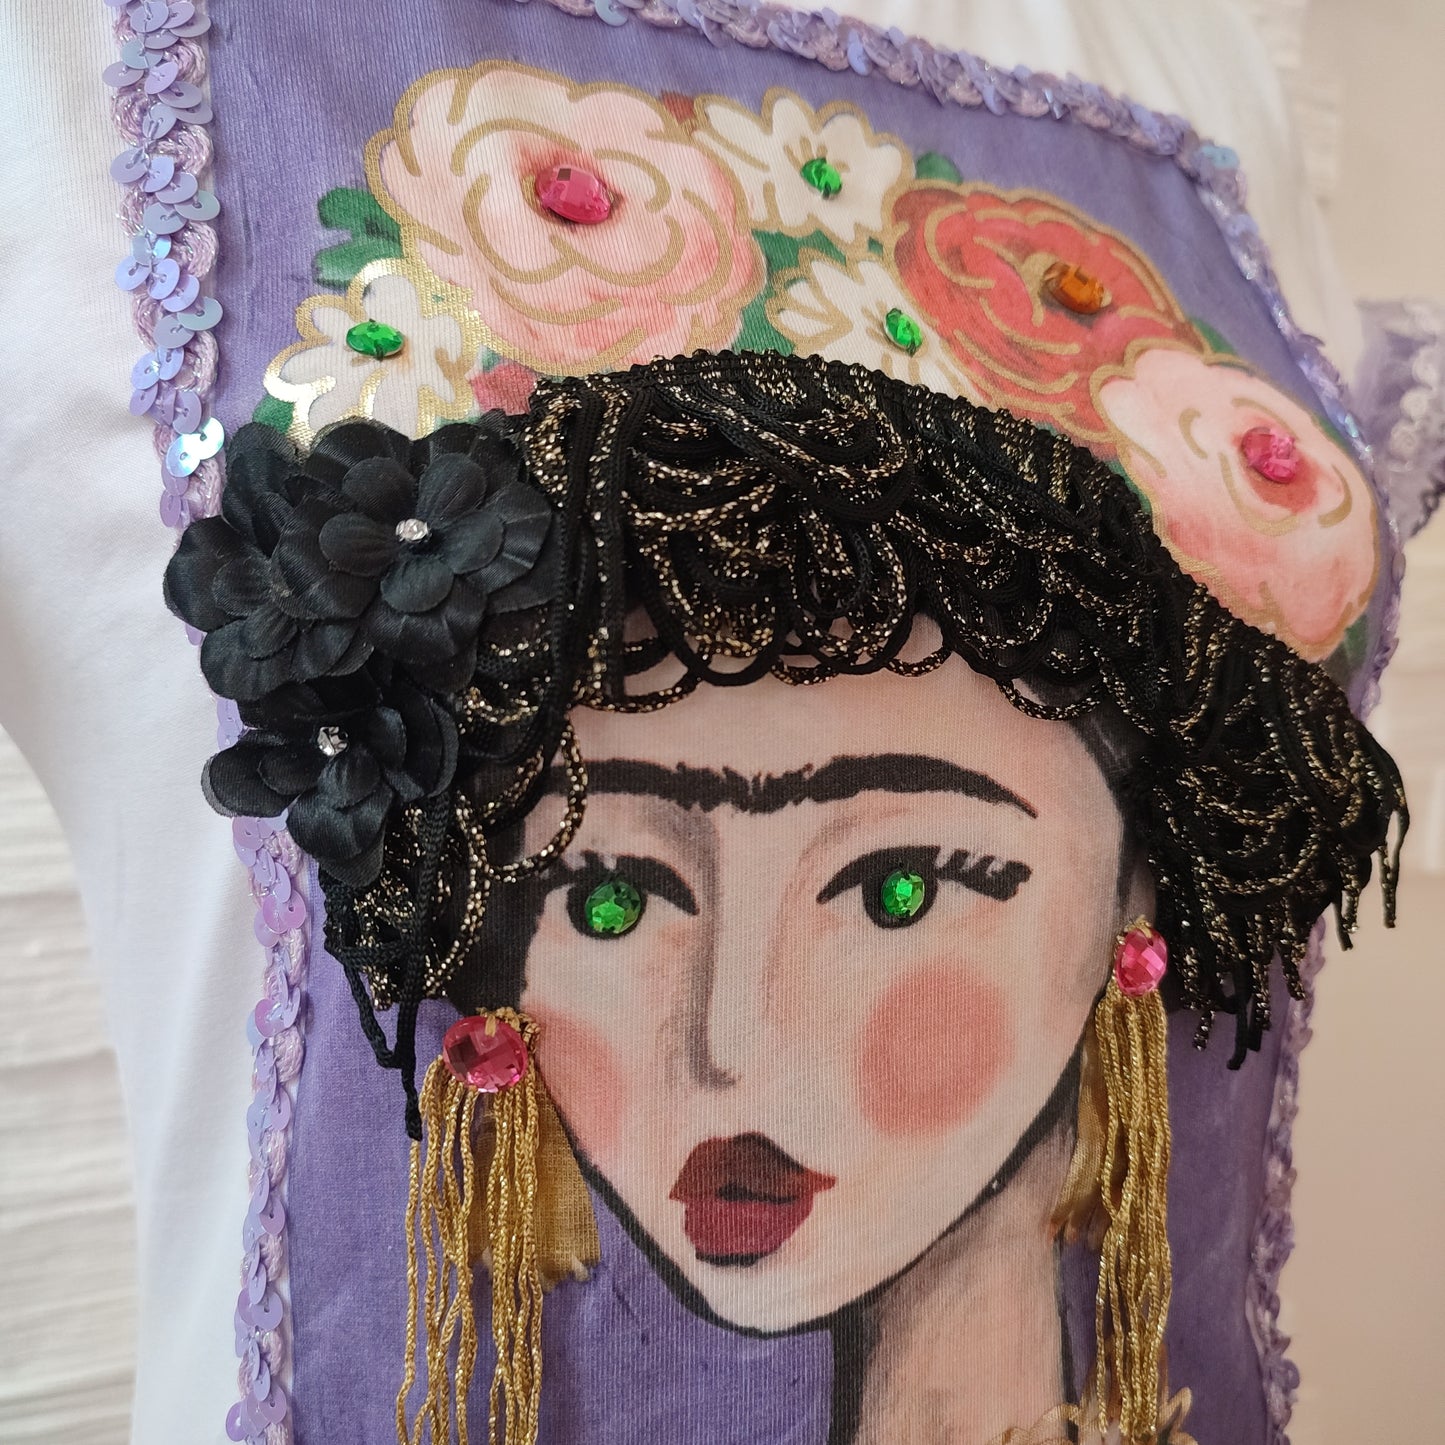 T shirt Frida Kahlo violet